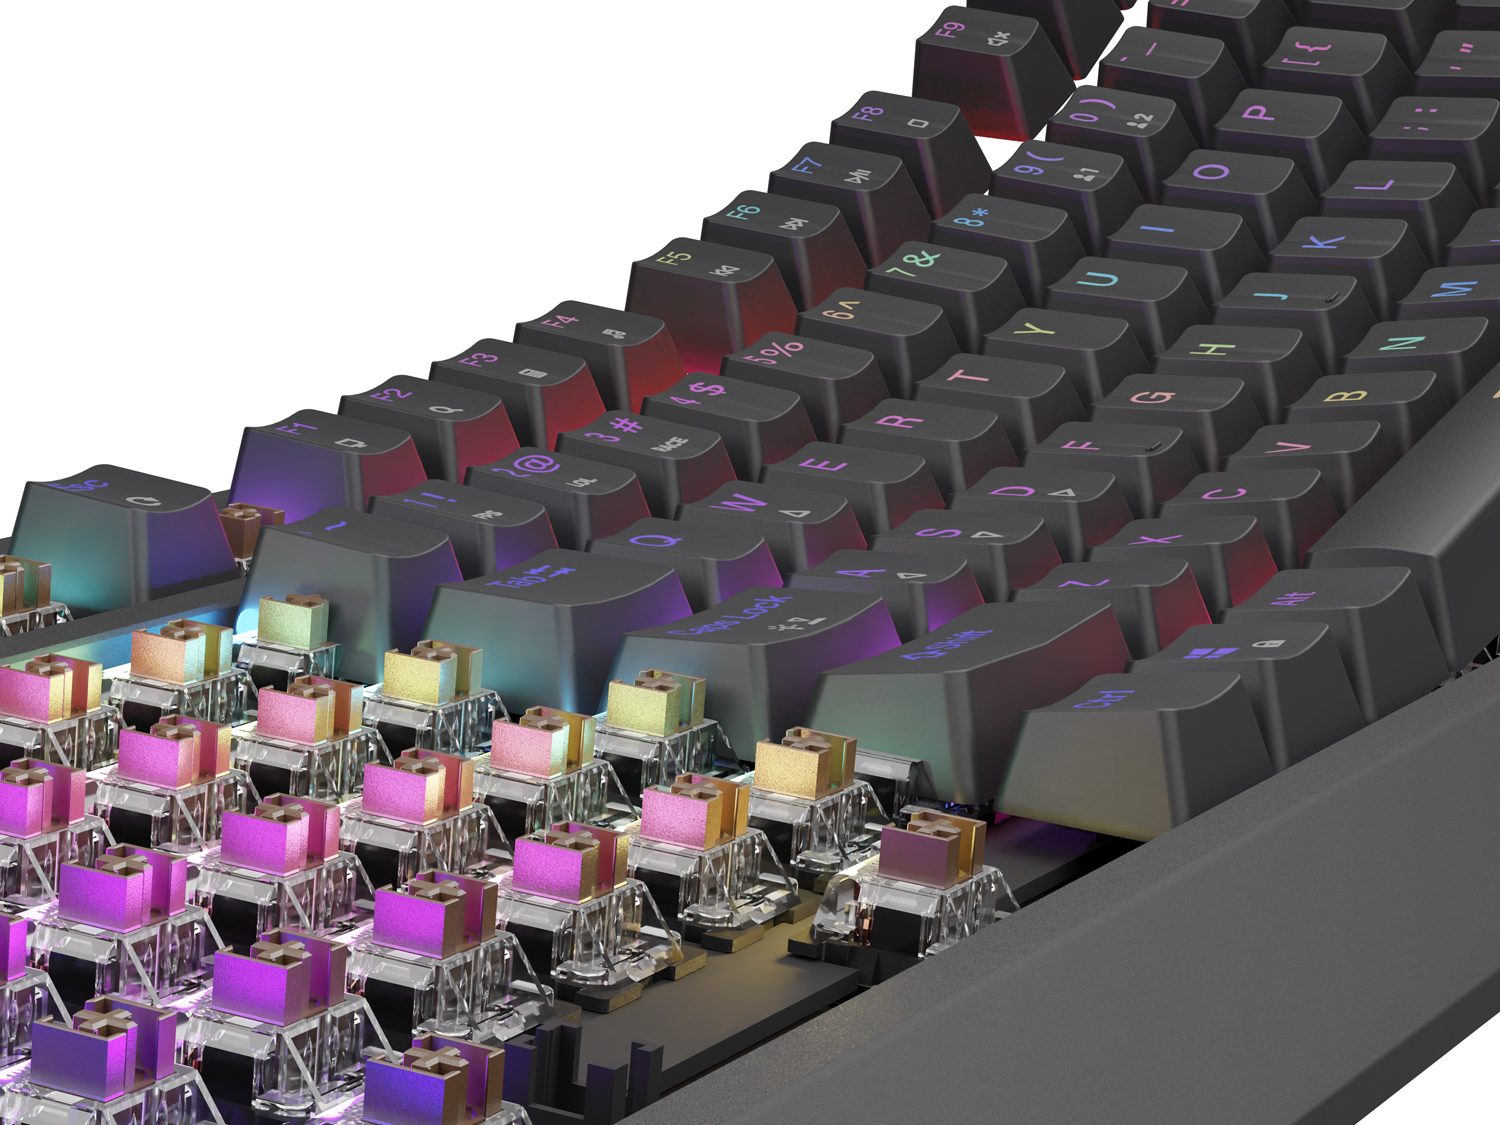 Obrázek Genesis herní klávesnice THOR 230/TKL/RGB/Outemu Brown/Drátová USB/US layout/Černá